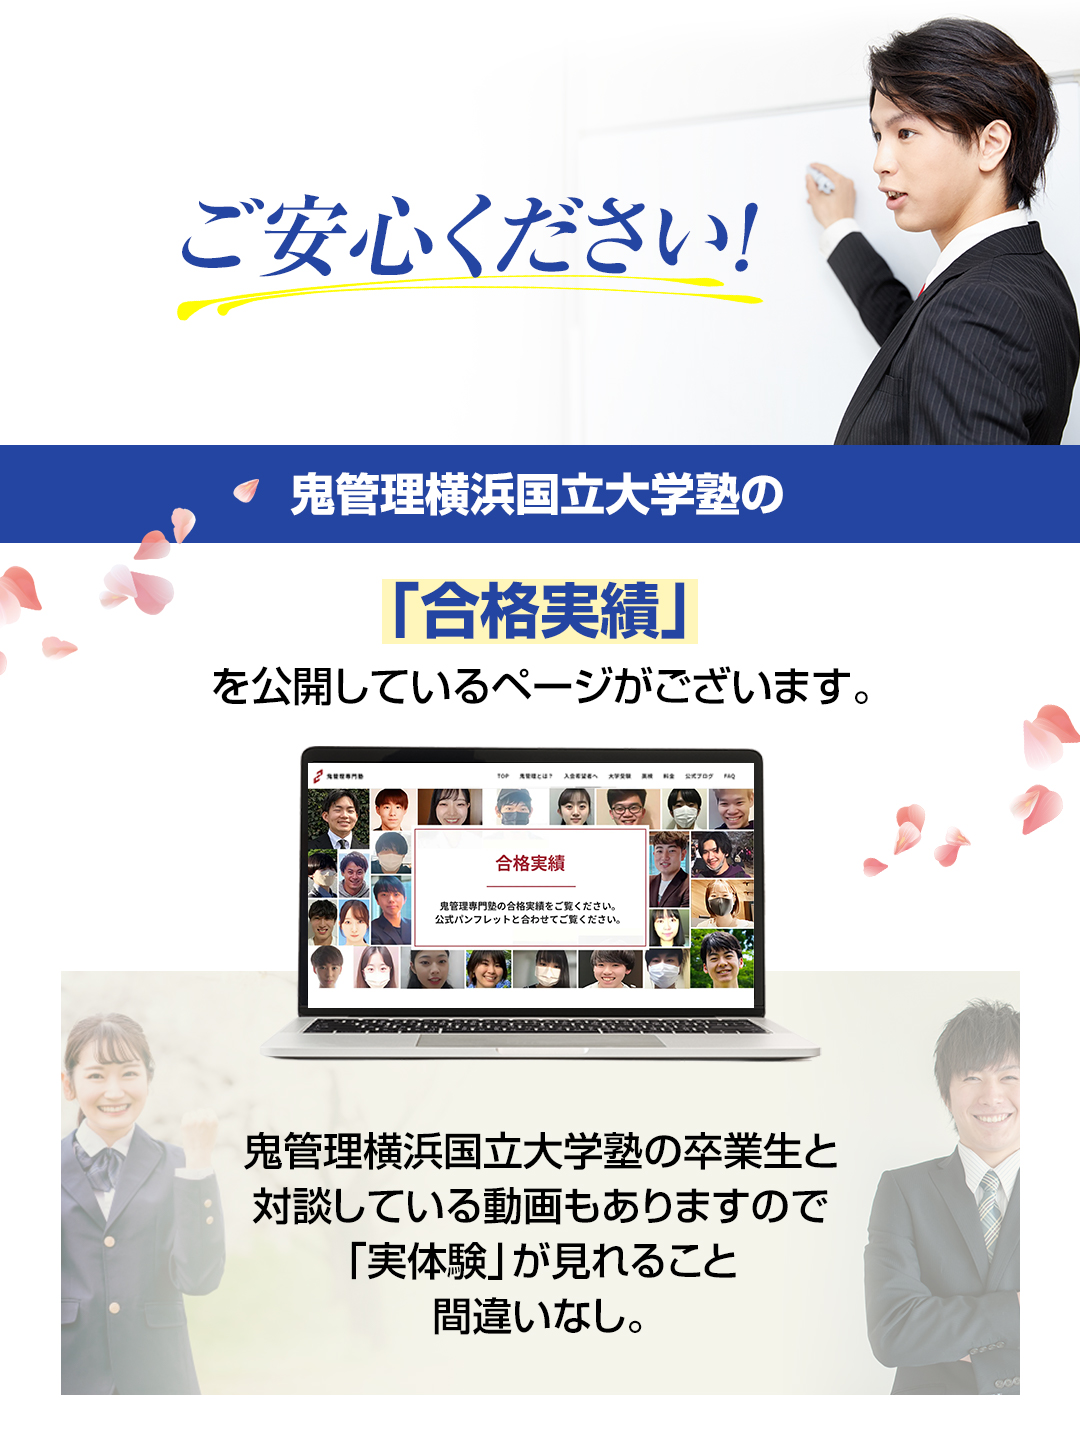 鬼管理横浜国立大学塾の「合格実績」を公開しているページがございます